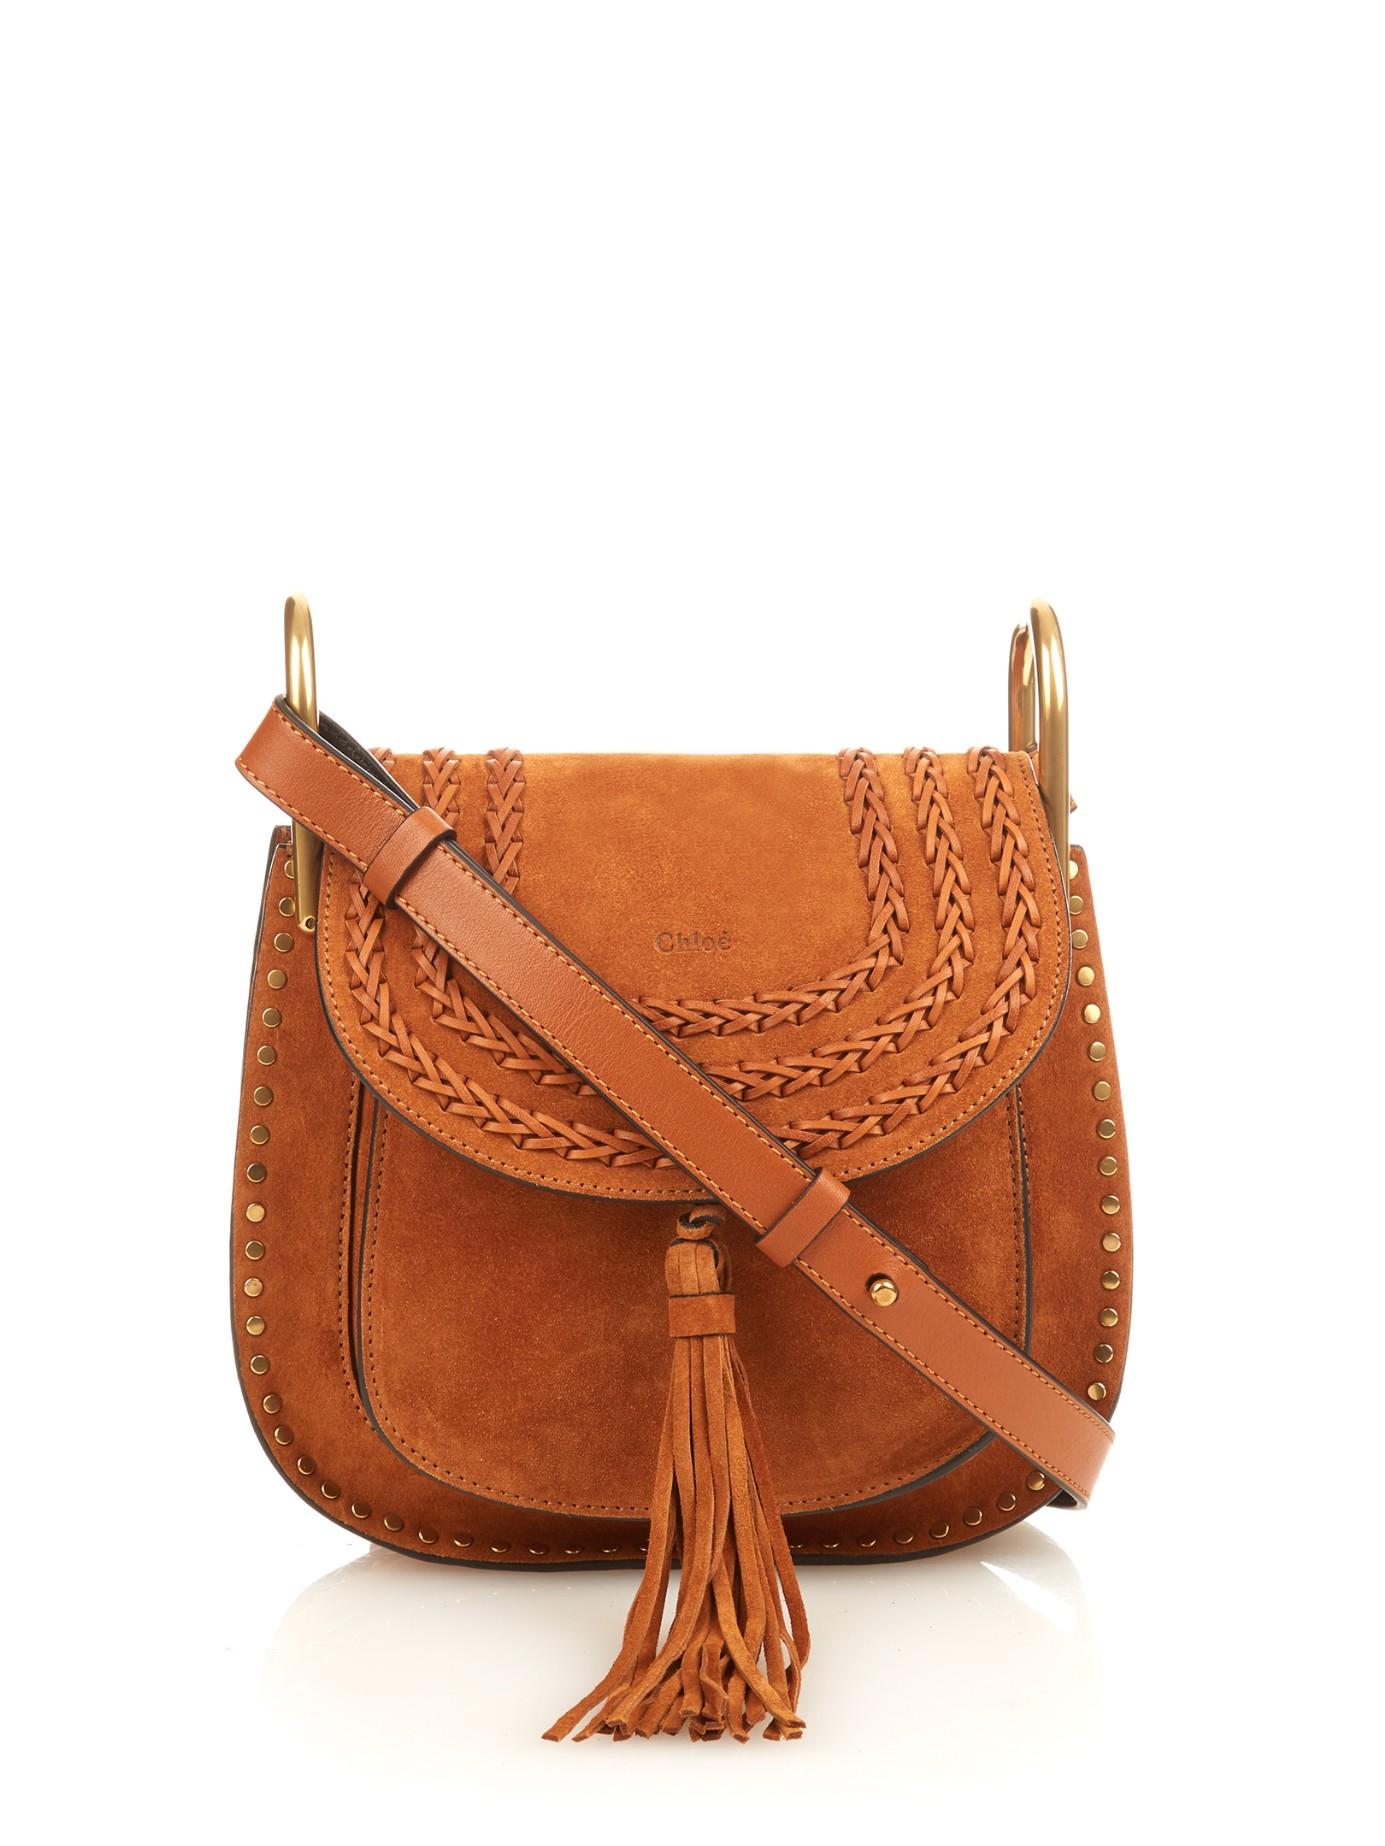 chloe handbags fake - Chlo Hudson Small Suede Cross-body Bag in Brown (TAN) | Lyst